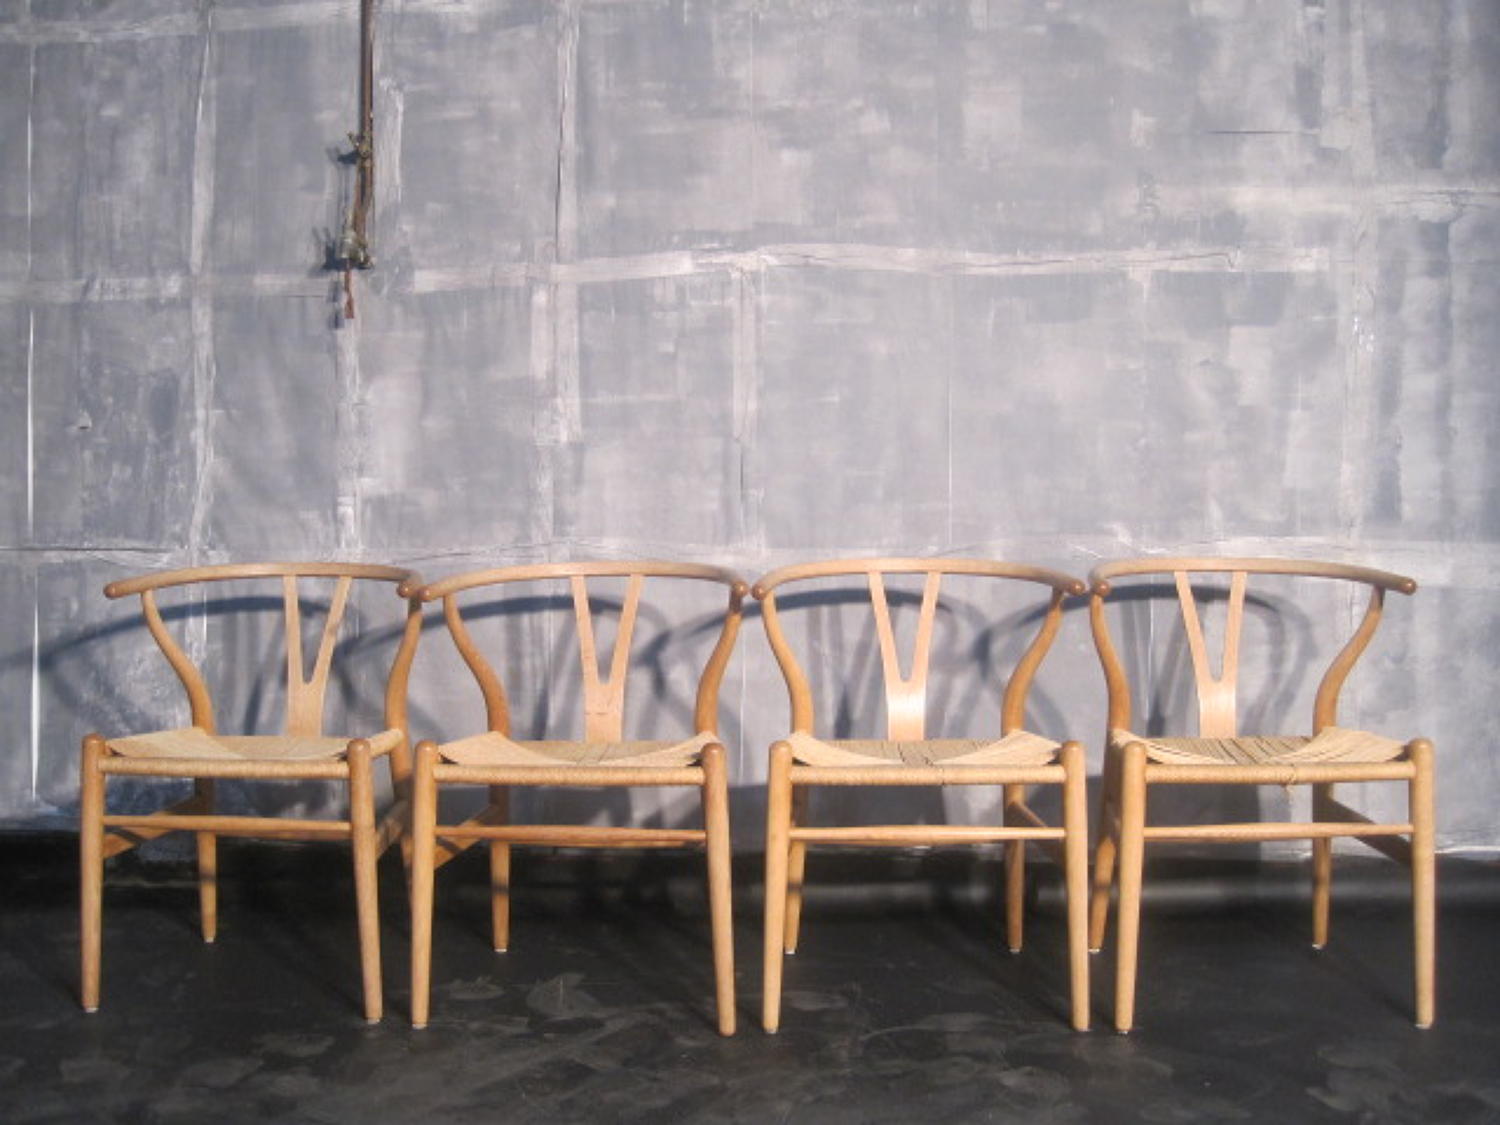 Four wishbone chairs by Hans Wegner in oak